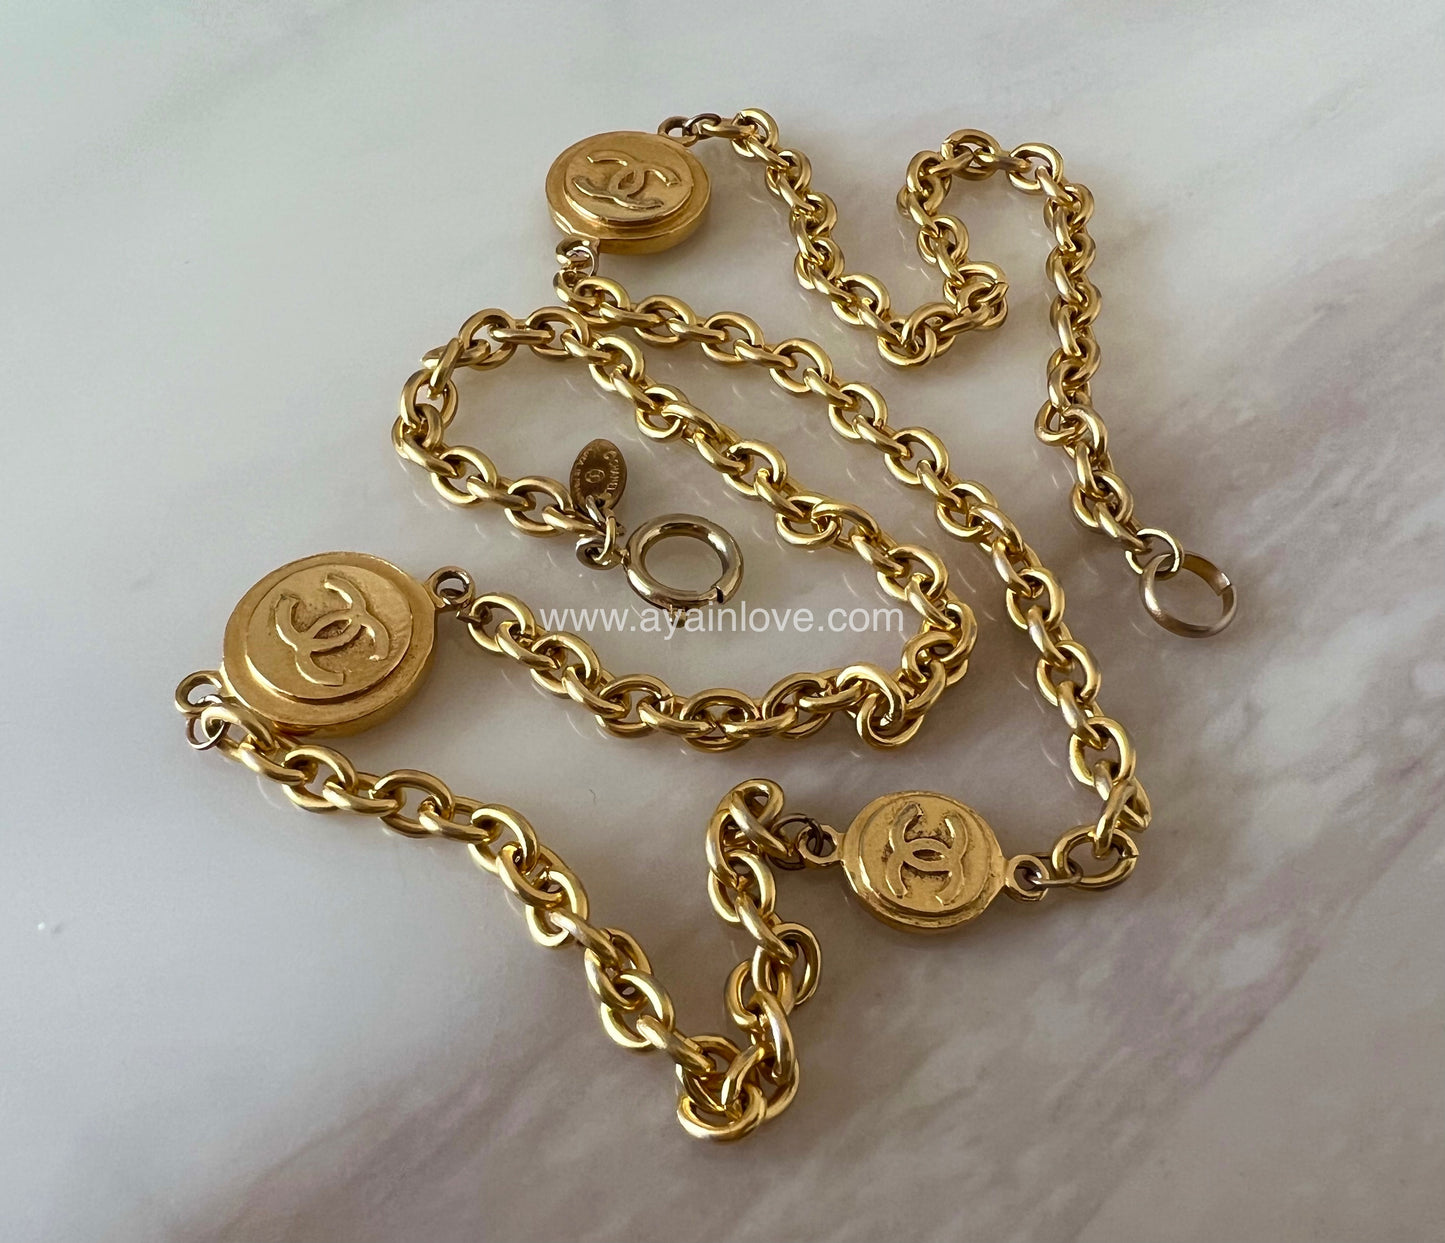 CHANEL 1990s Vintage Medallion CC Necklace Bracelet 24K Gold Plated Hardware